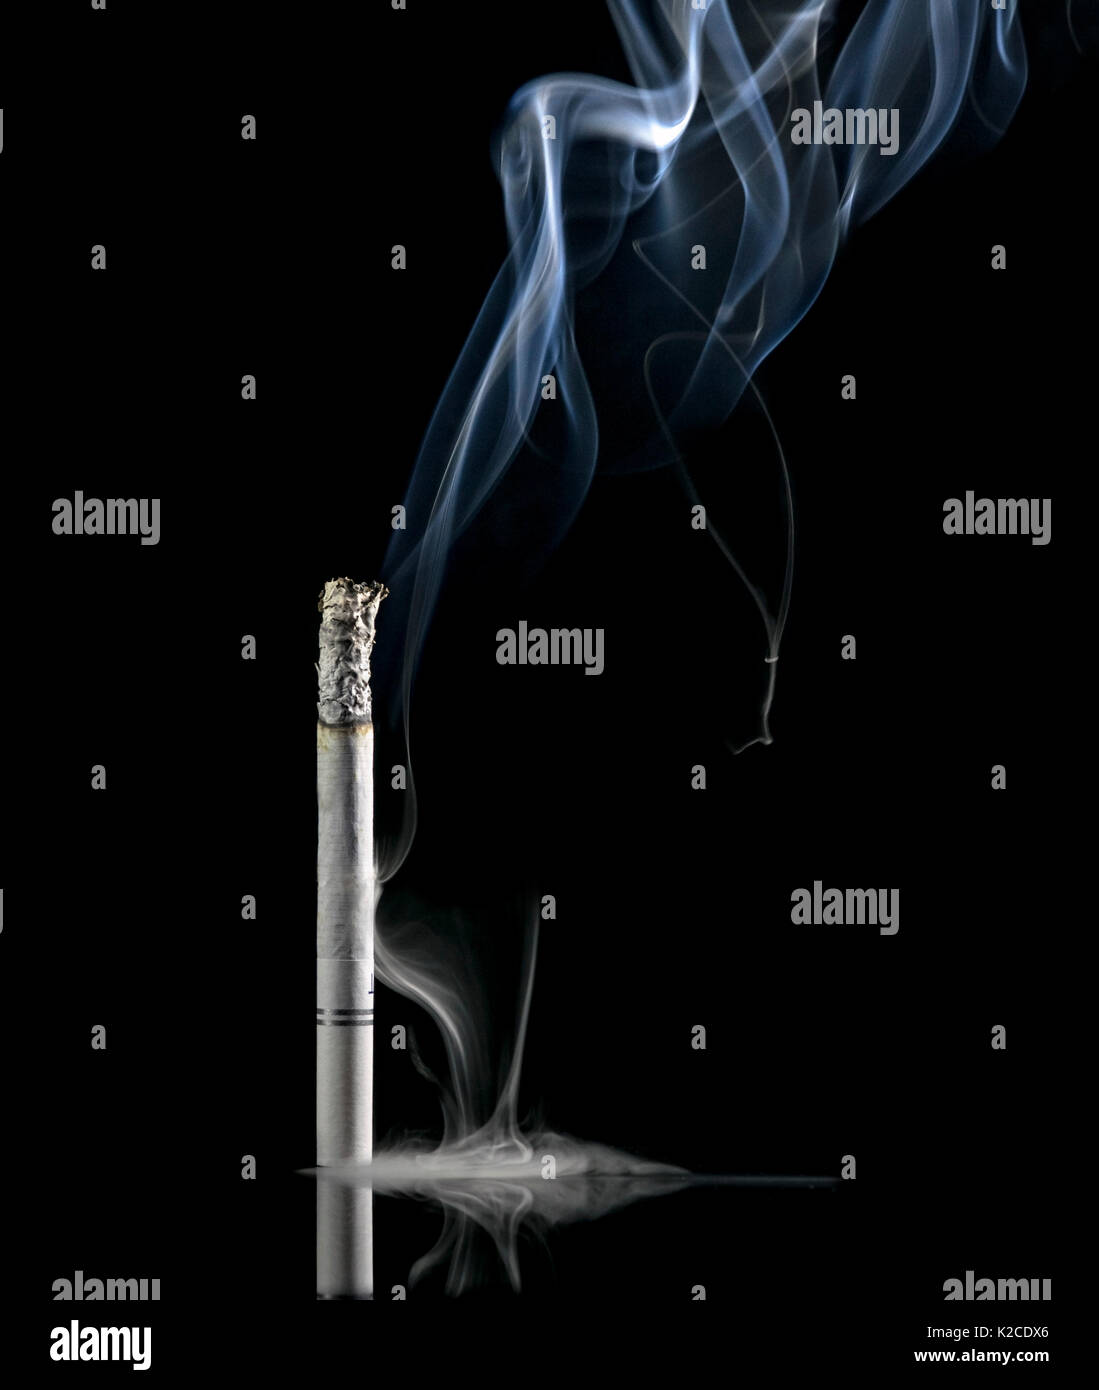 White sigaretta accesa su uno sfondo nero e con un sacco di fumo proveniente dal lato inferiore e superiore, e cenere sul fumo Foto Stock